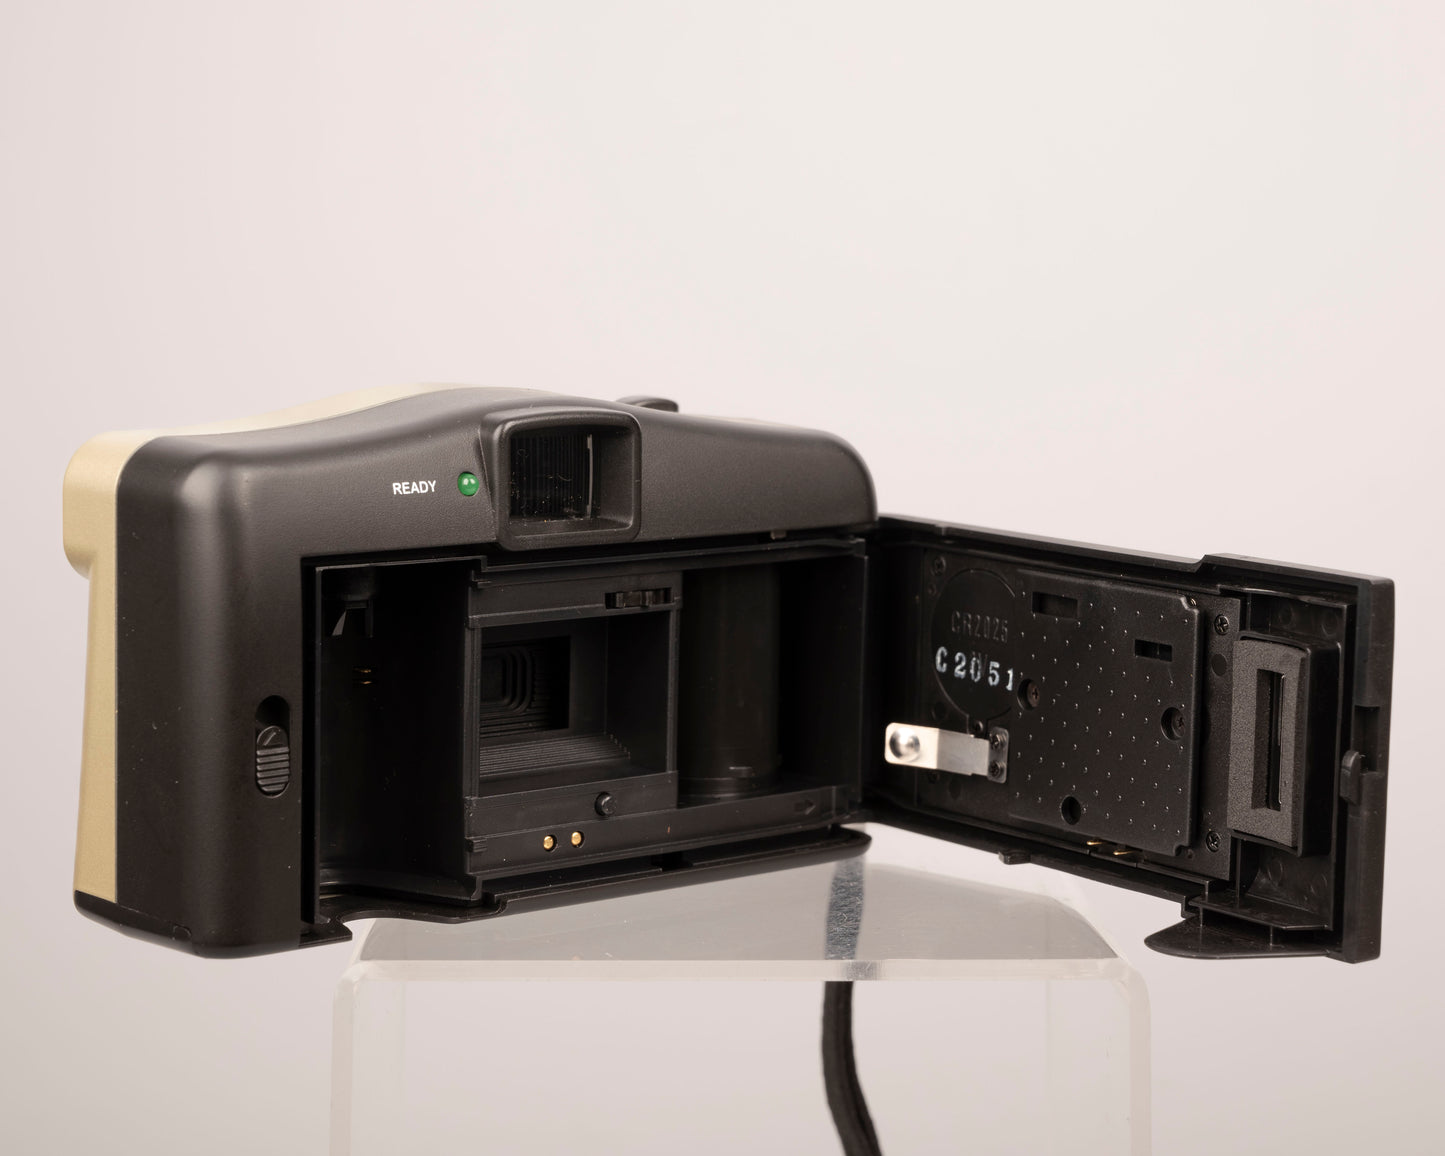 Vivitar BV2000 Date-A-Print 35mm film camera w/ case